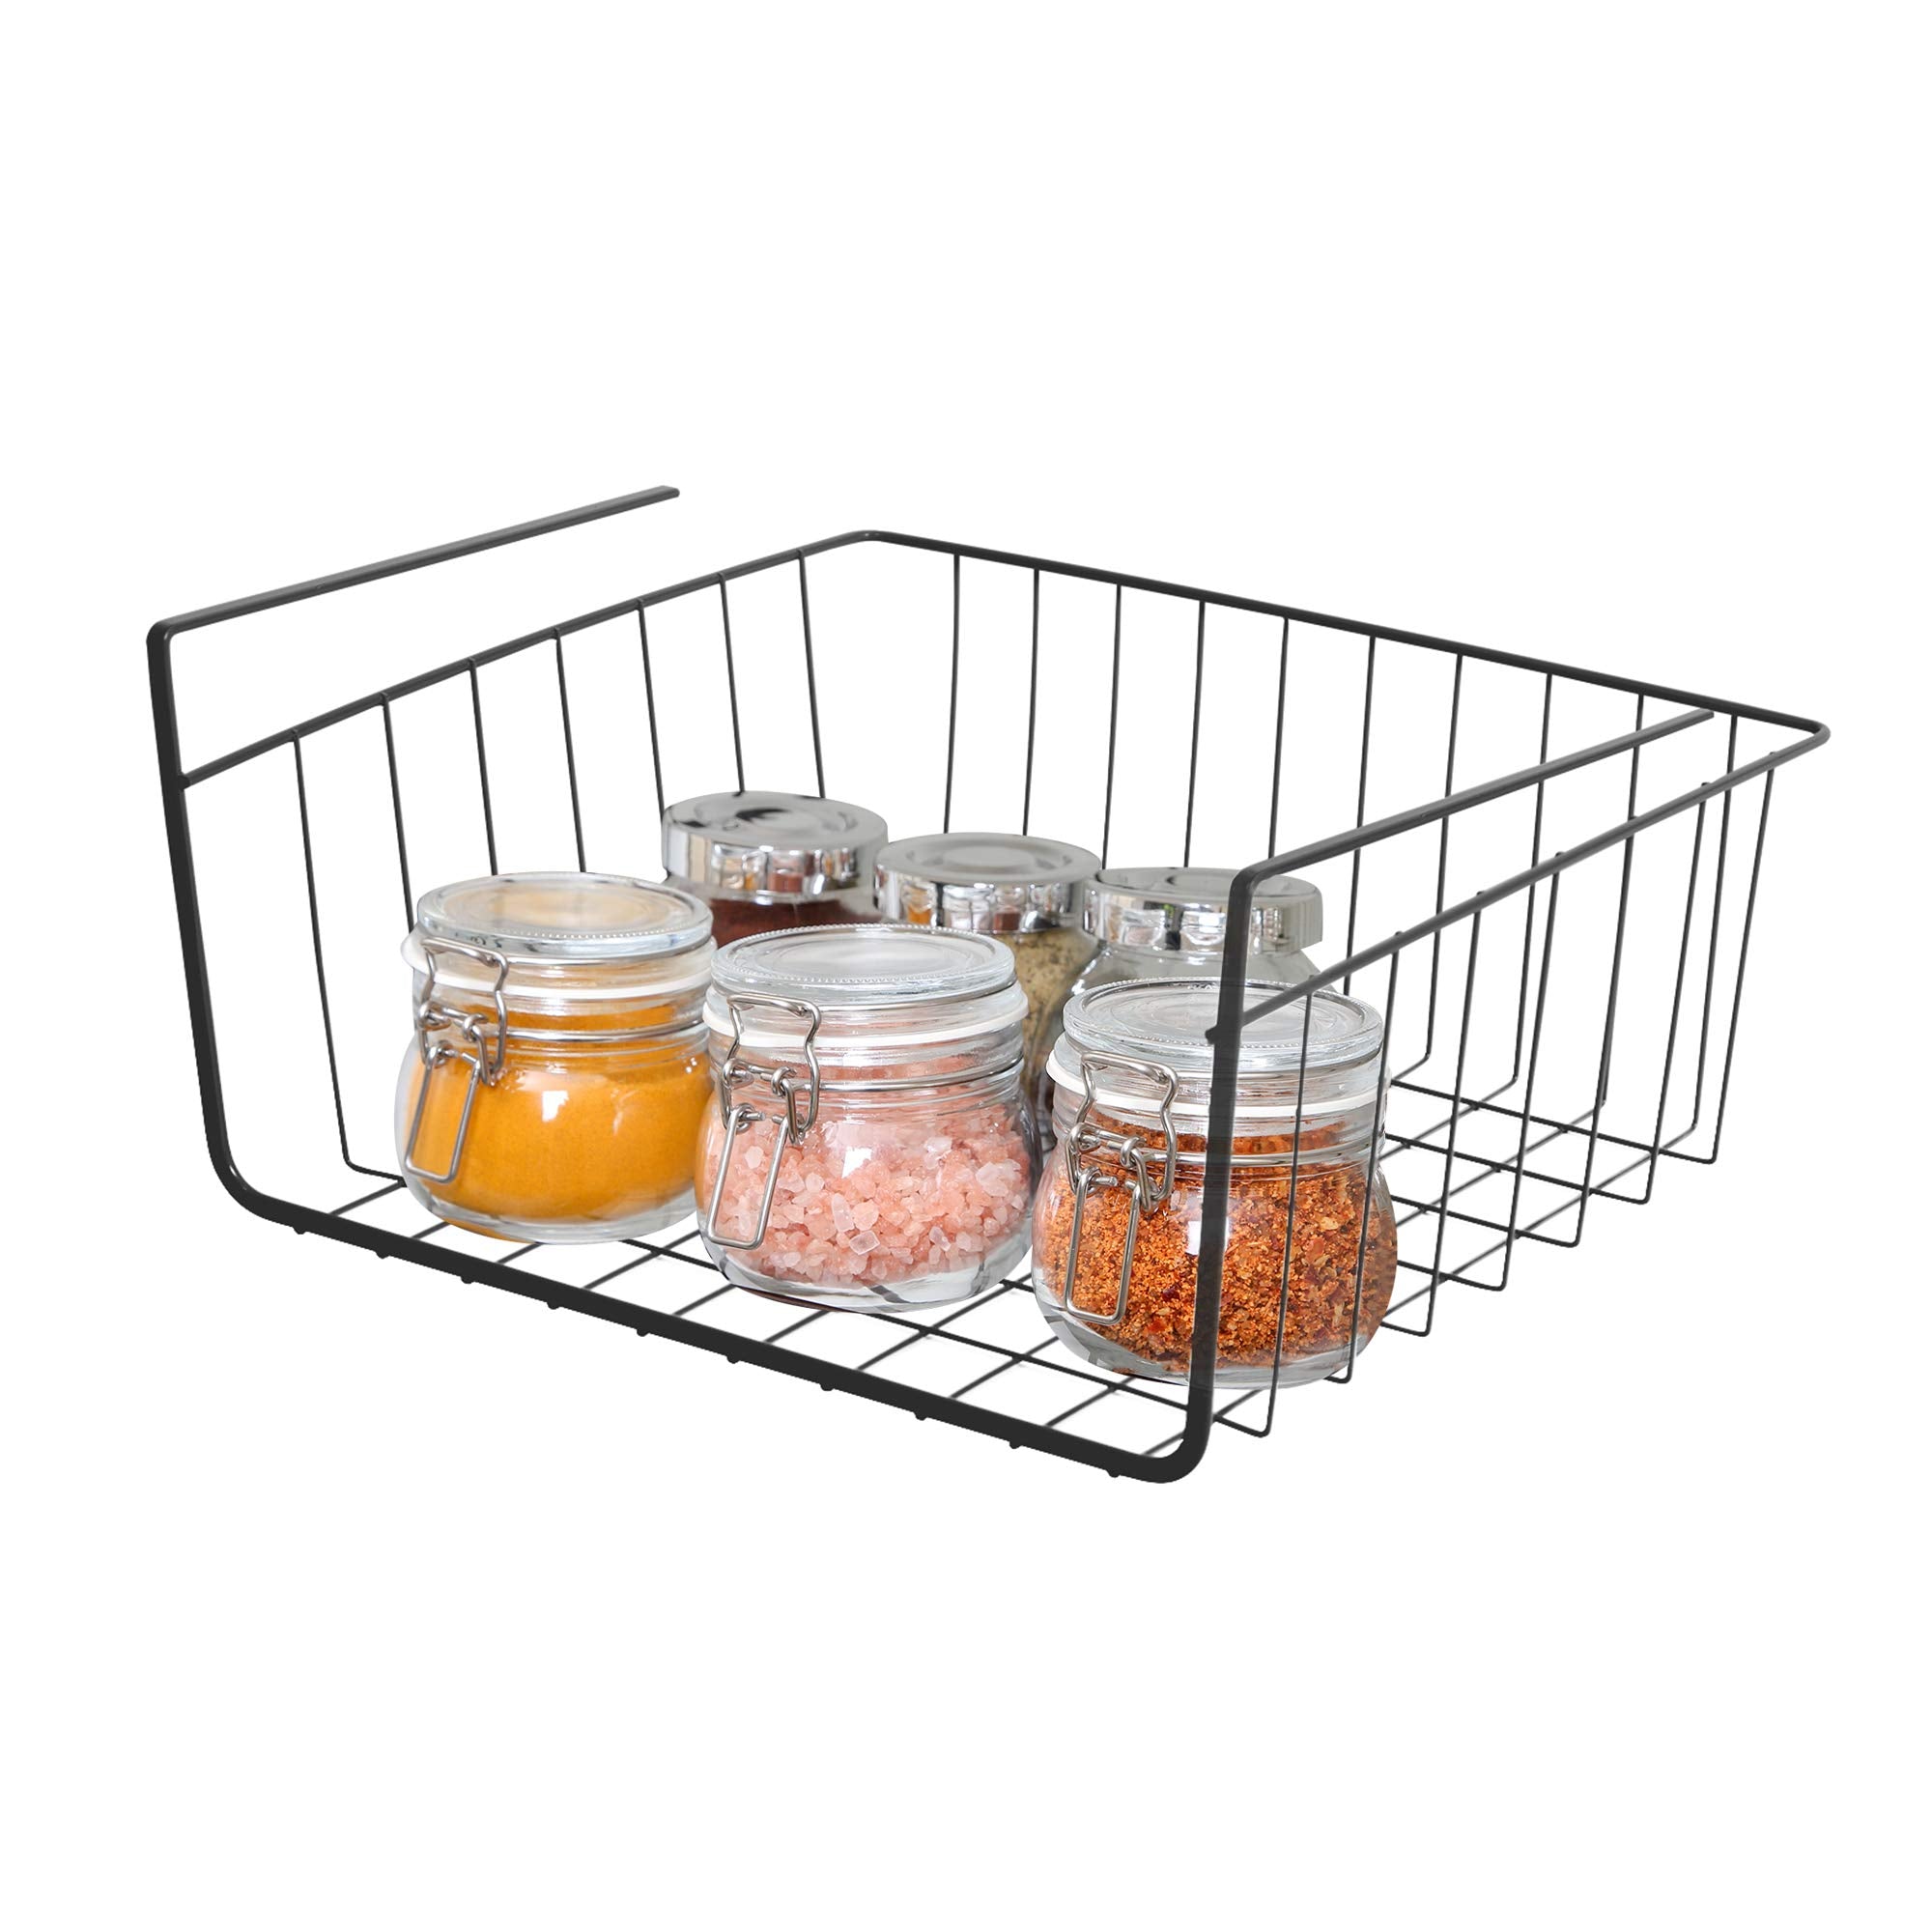 https://www.shopsmartdesign.com/cdn/shop/products/small-undershelf-storage-basket-smart-design-kitchen-8257188-incrementing-number-921788.jpg?v=1679337008